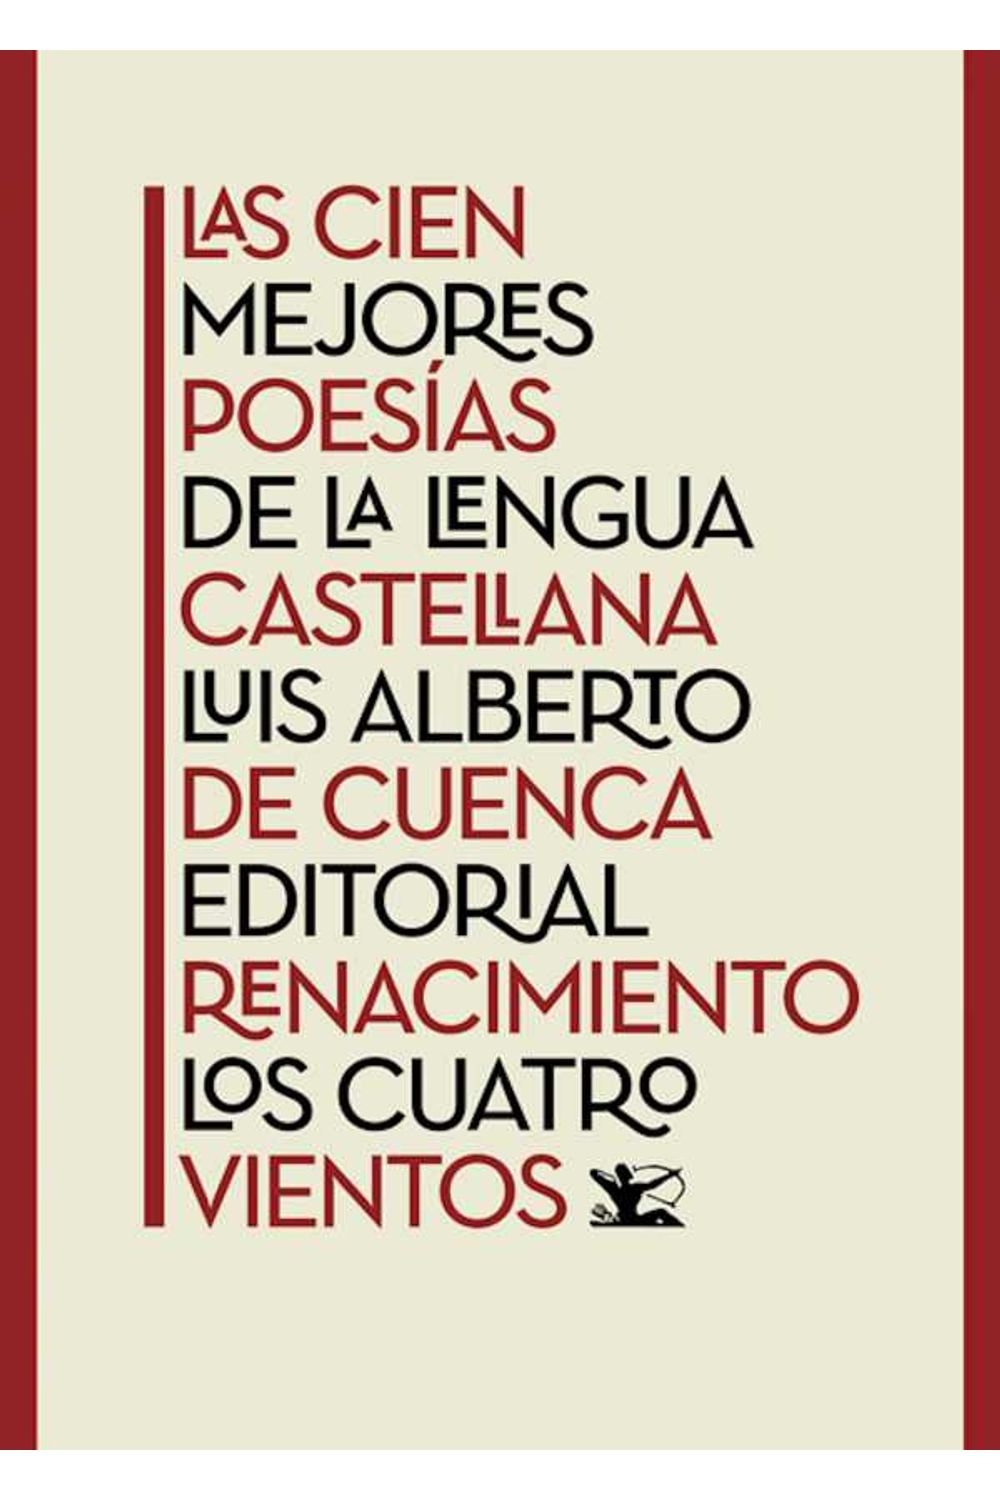 bw-las-cien-mejores-poesiacuteas-de-la-lengua-castellana-renacimiento-9788417266042